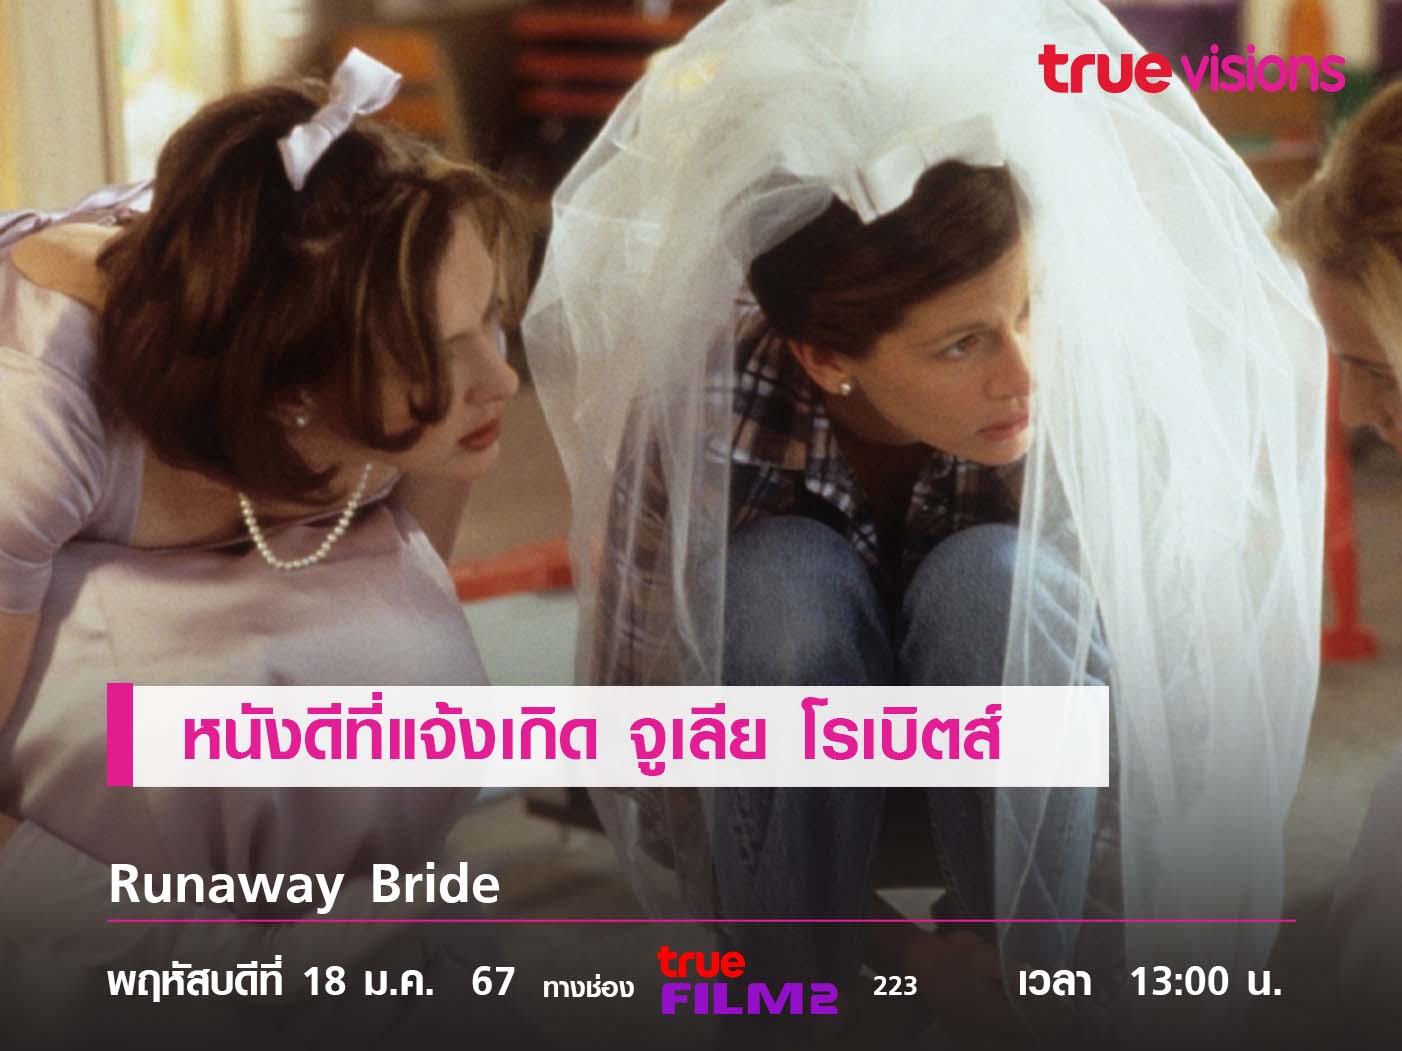 หนังดีที่แจ้งเกิด  จูเลีย โรเบิตส์  "Runaway Bride"